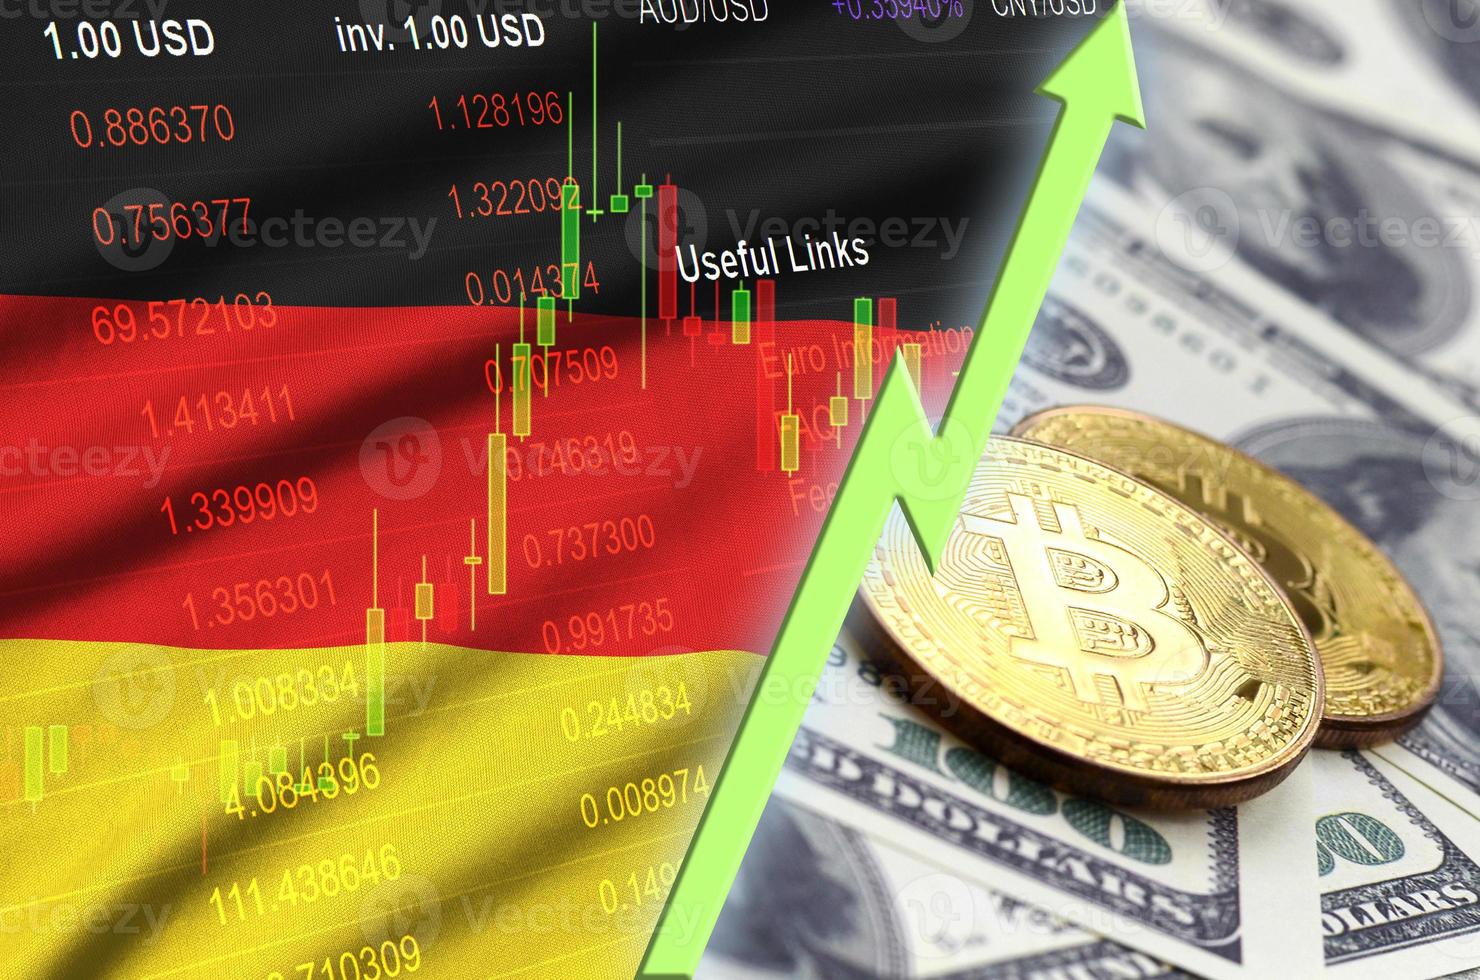 drapeau allemand et tendance croissante de la crypto-monnaie avec deux bitcoins sur des billets d'un dollar photo